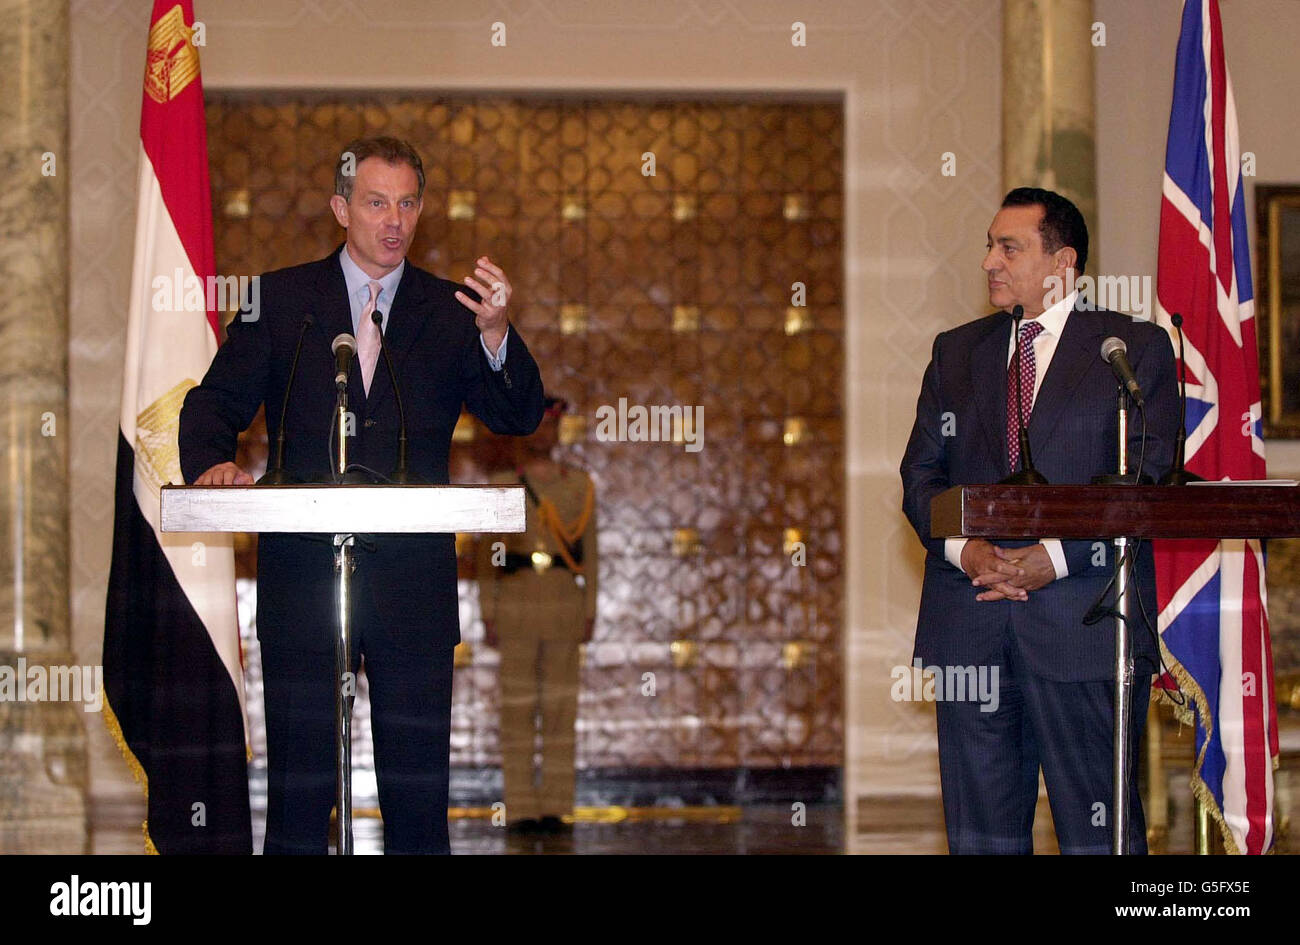 Il primo ministro britannico Tony Blair (L), insieme al presidente Hosni Mubarak, si rivolgono ai media del Cairo oggi 11 2001 ottobre sull'ultima tappa della sua missione diplomatica in Medio Oriente dopo l'ondata più pesante di attacchi aerei contro l'Afghanistan. Foto Stock